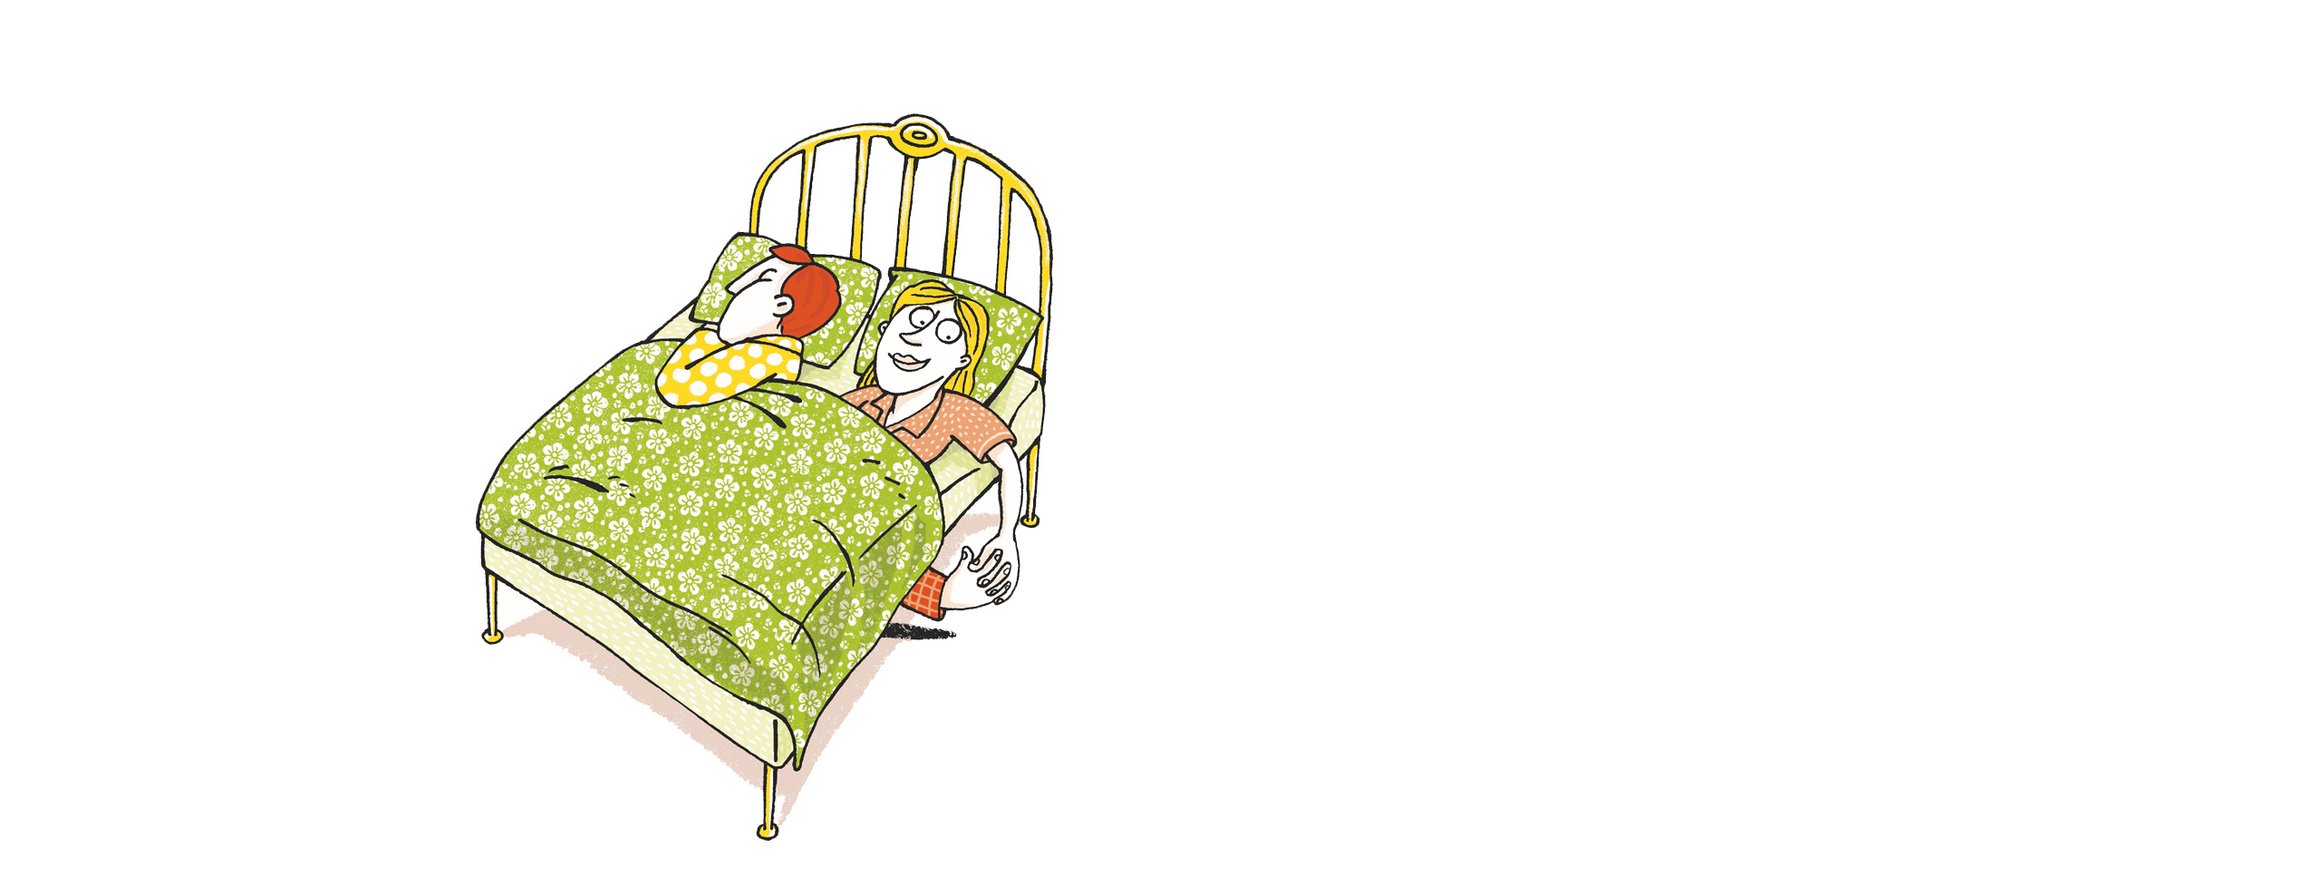 Die Illustration zeigt ein Paar im Bett, und während er schläft, hält sie die Hand einer Person, die unter dem Bett herausschaut